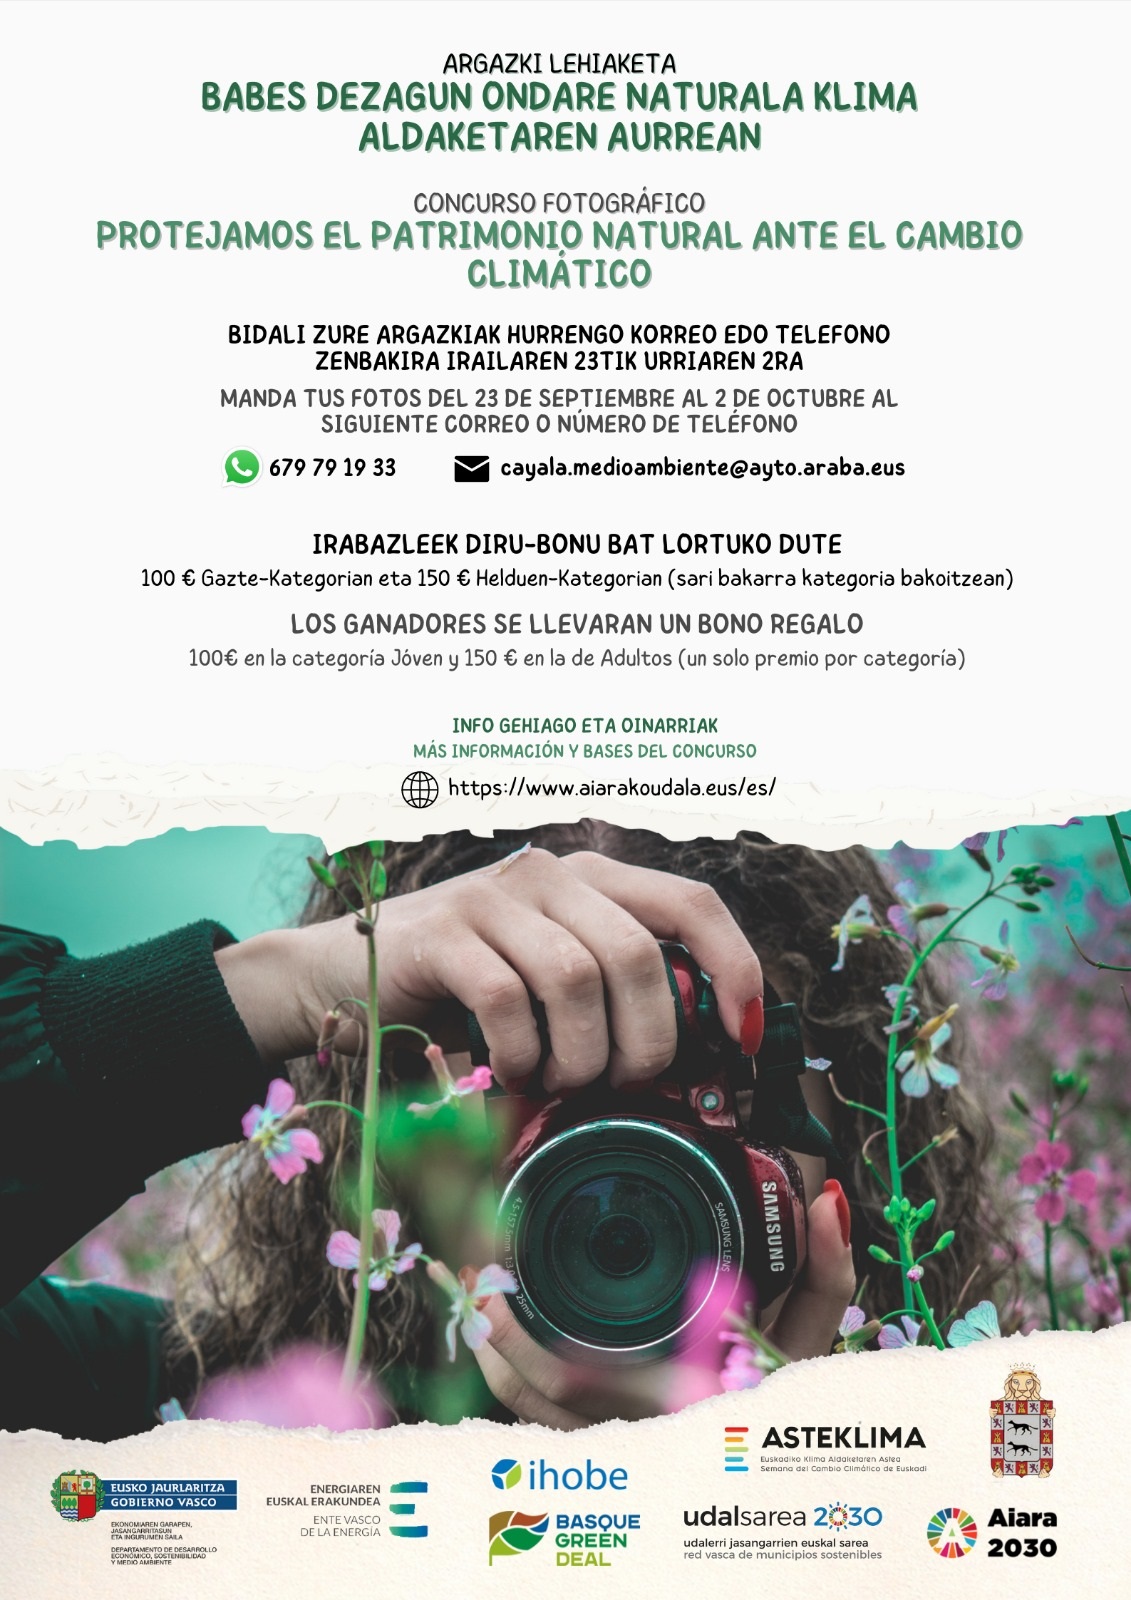 Concurso fotografía - “PROTEJAMOS NUESTRO PATRIMONIO FRENTE AL CAMBIO CLIMÁTICO”